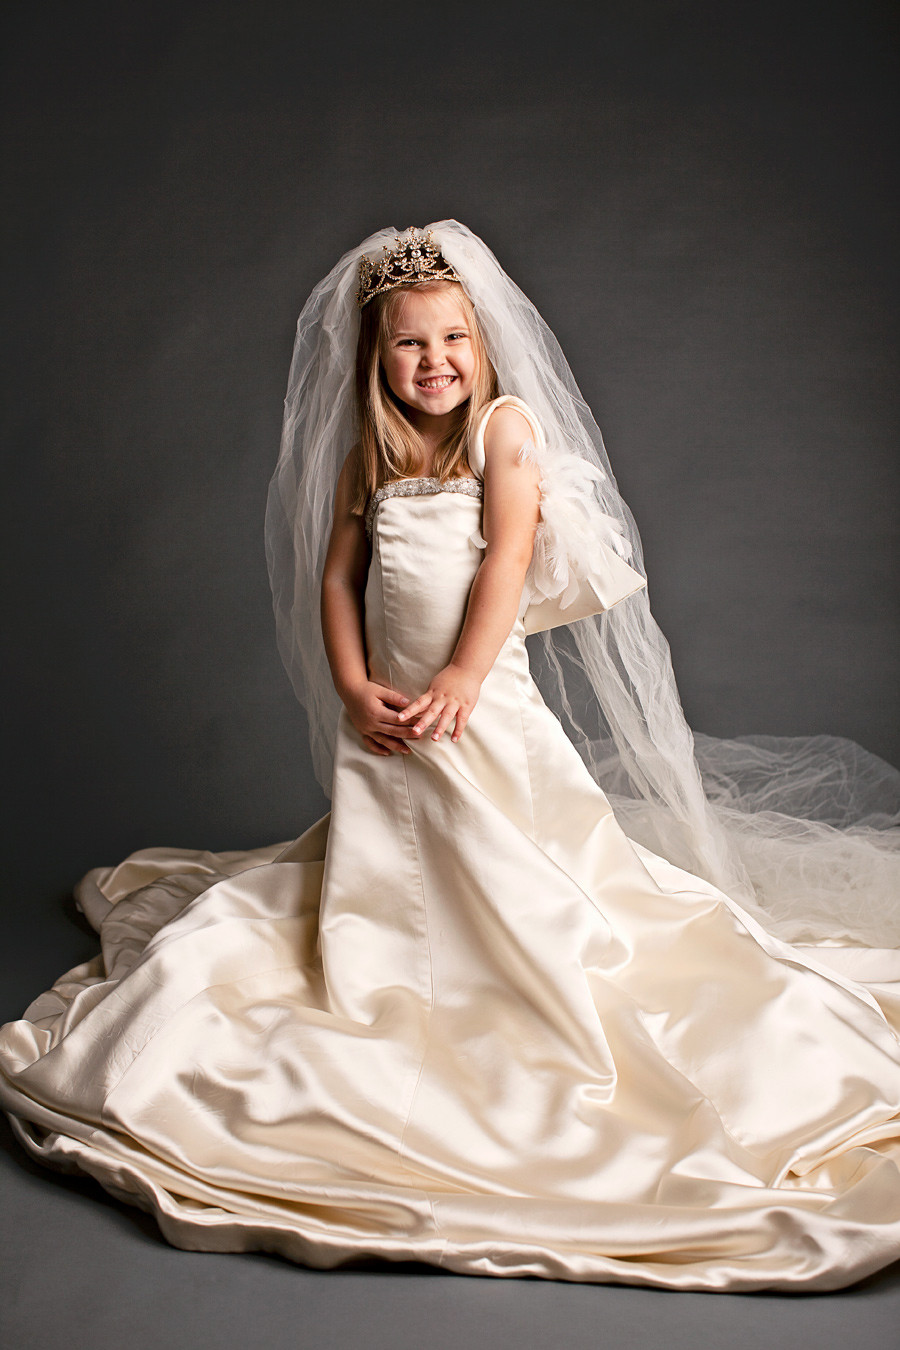 Little Girl Wedding Dresses
 Dress Up s for Little Girl in Her Mother s Wedding Dress